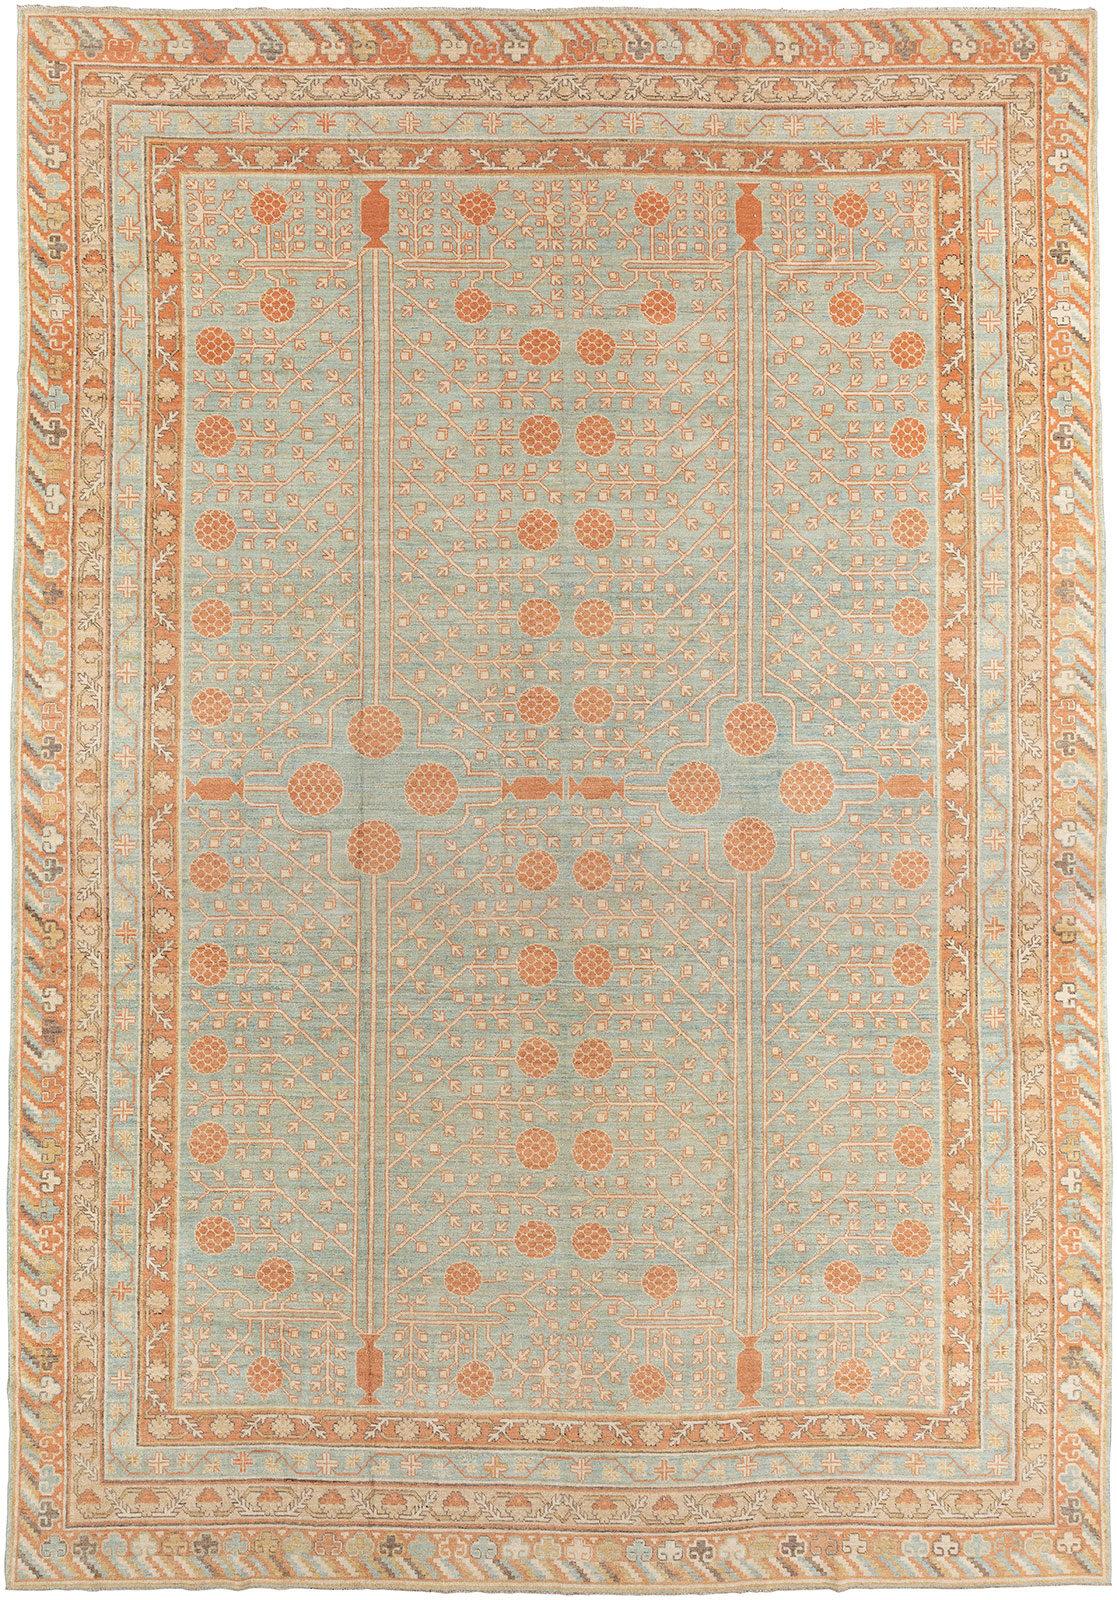 Vintage-inspirierter Khotan-Teppich des 21. Jahrhunderts mit Granatapfel-Motiv als Allover

11'11'' x 17'

 Khotan-Teppiche haben in der Regel ein langes und relativ schmales Format mit schlichten, geräumigen Mustern, die sich hervorragend für